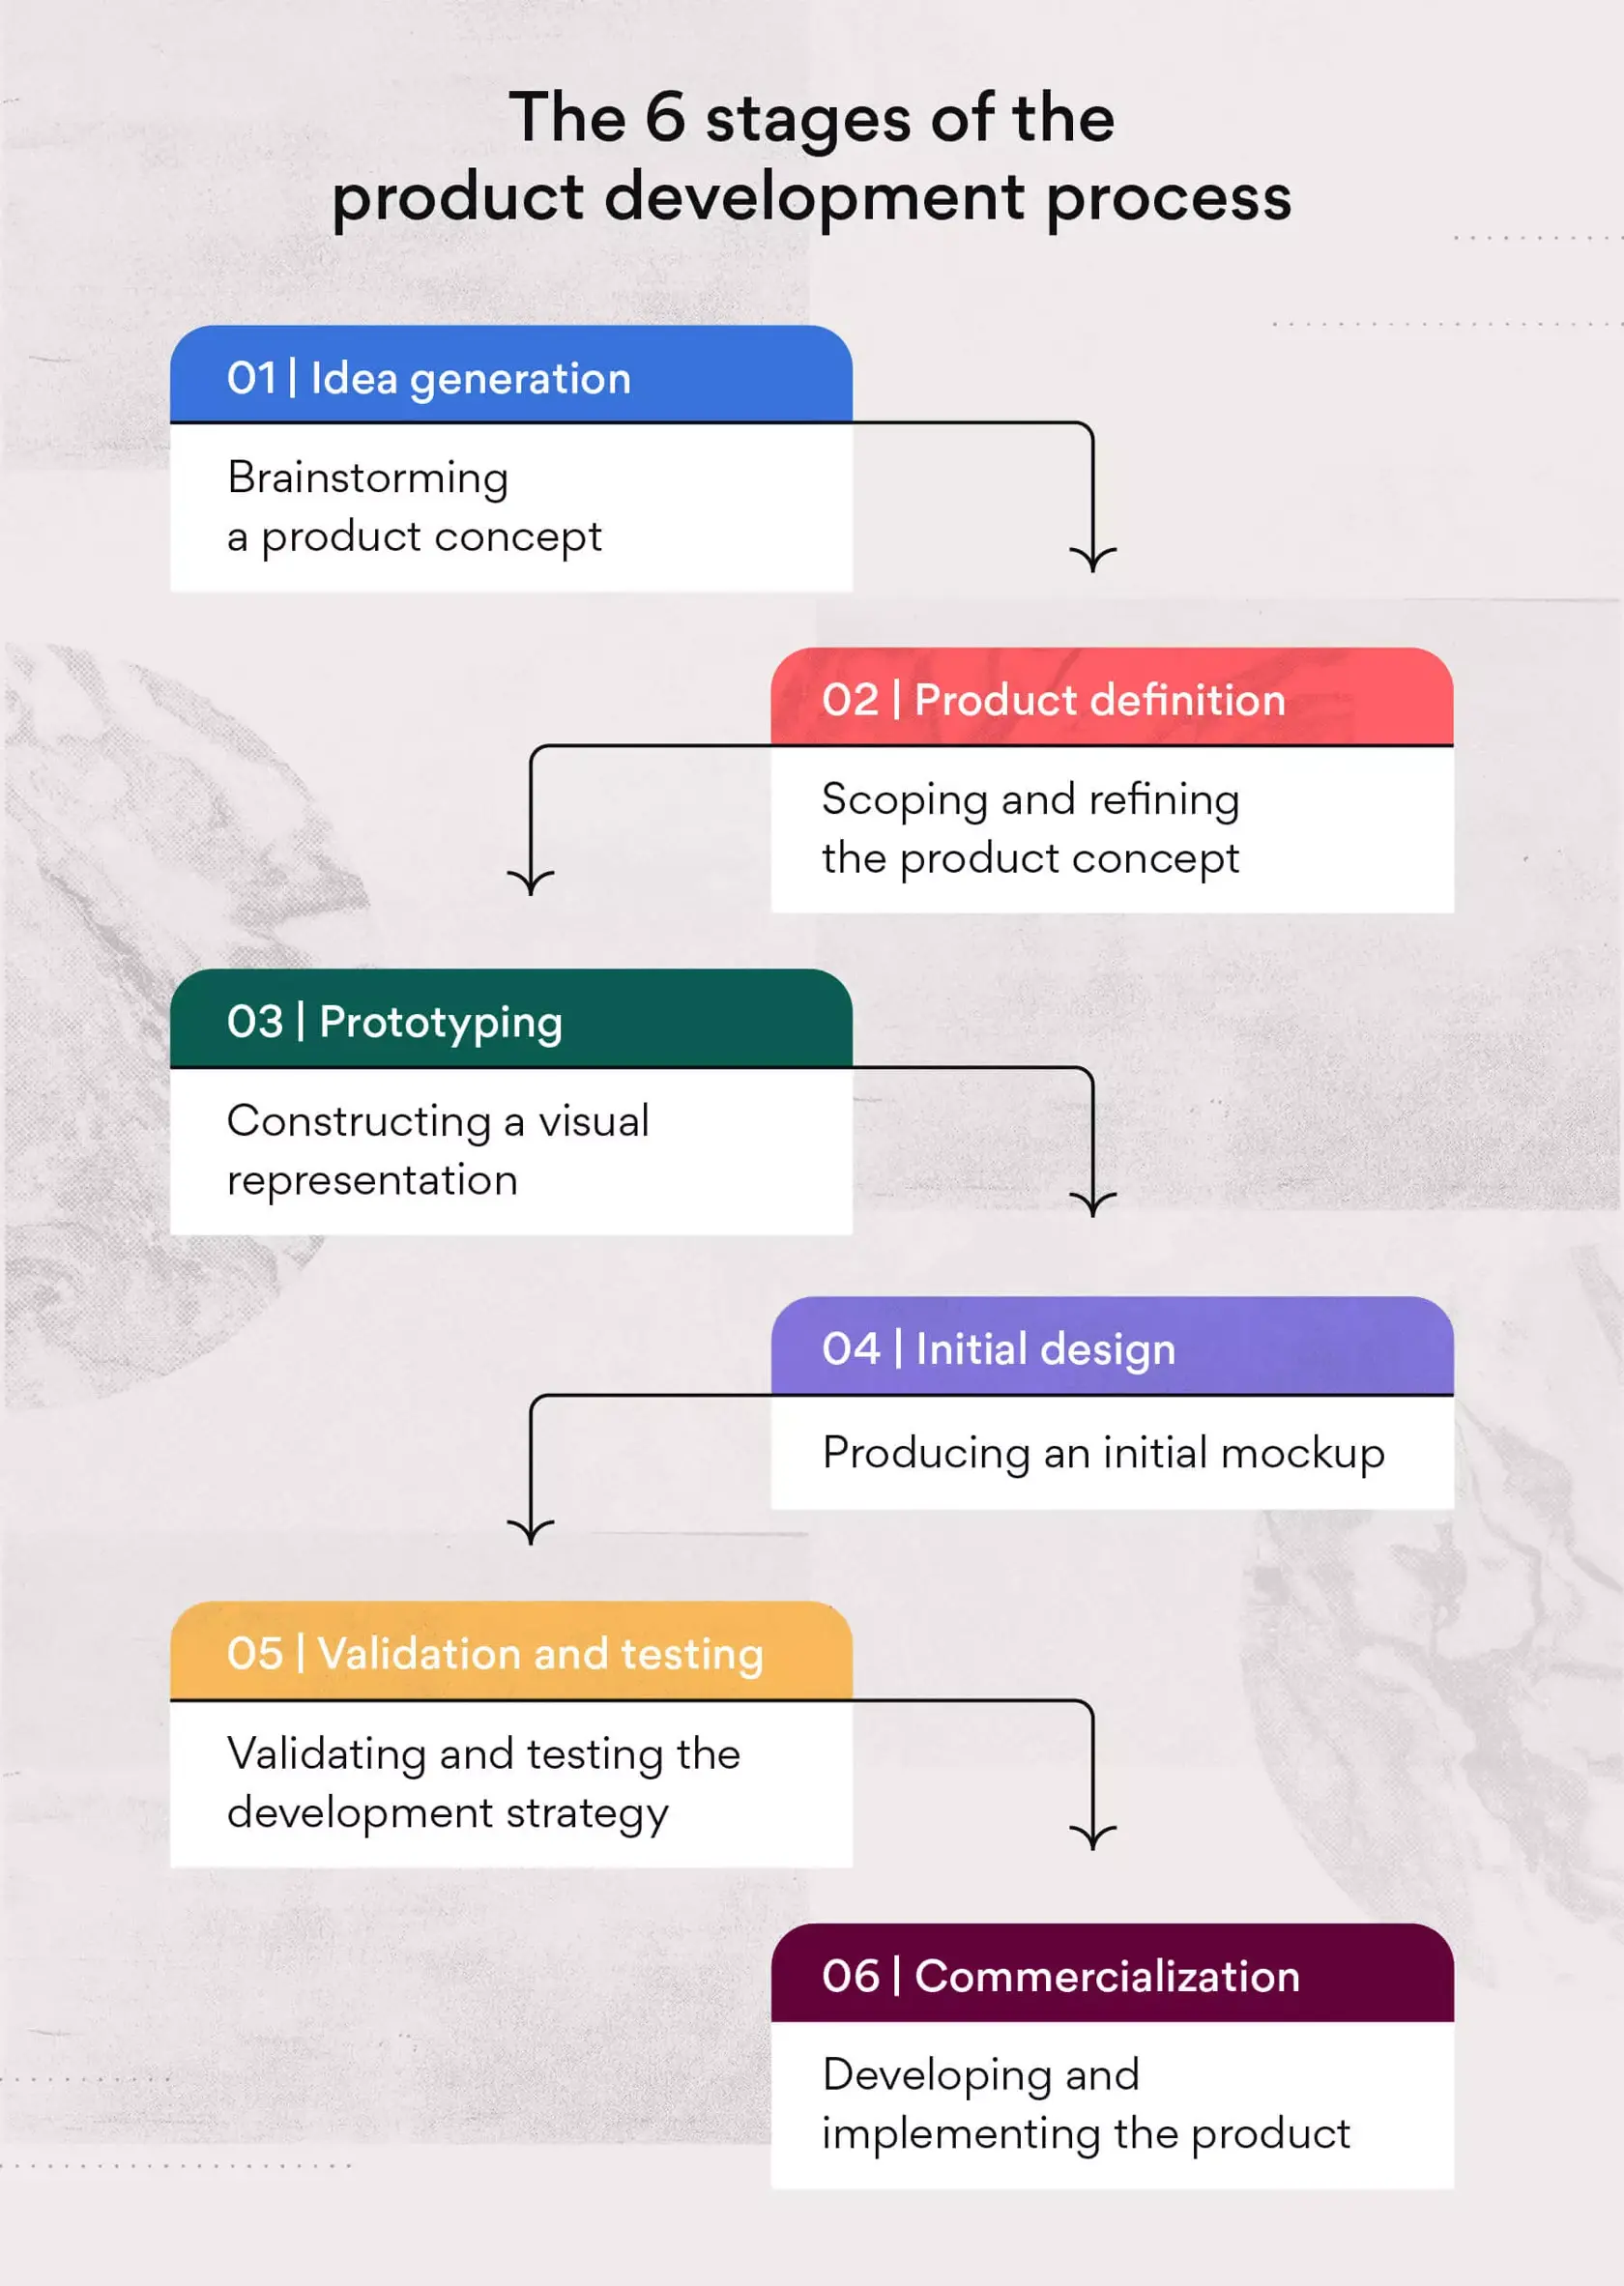 제품 개발 프로세스의 6단계